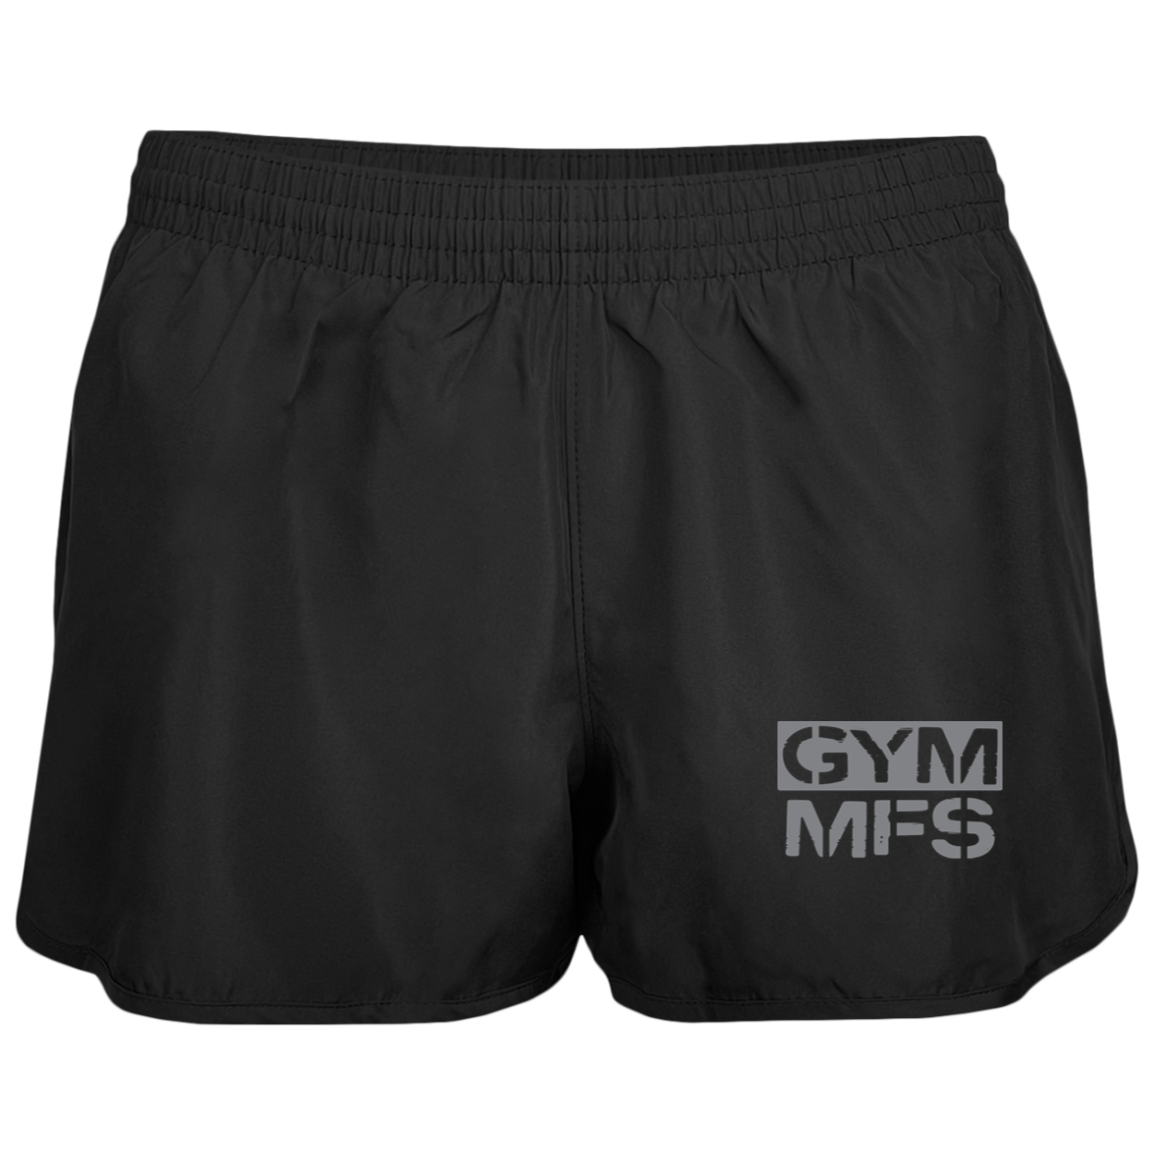 GYM MFS - Gym Shorts Ladies' Wayfarer Running Shorts